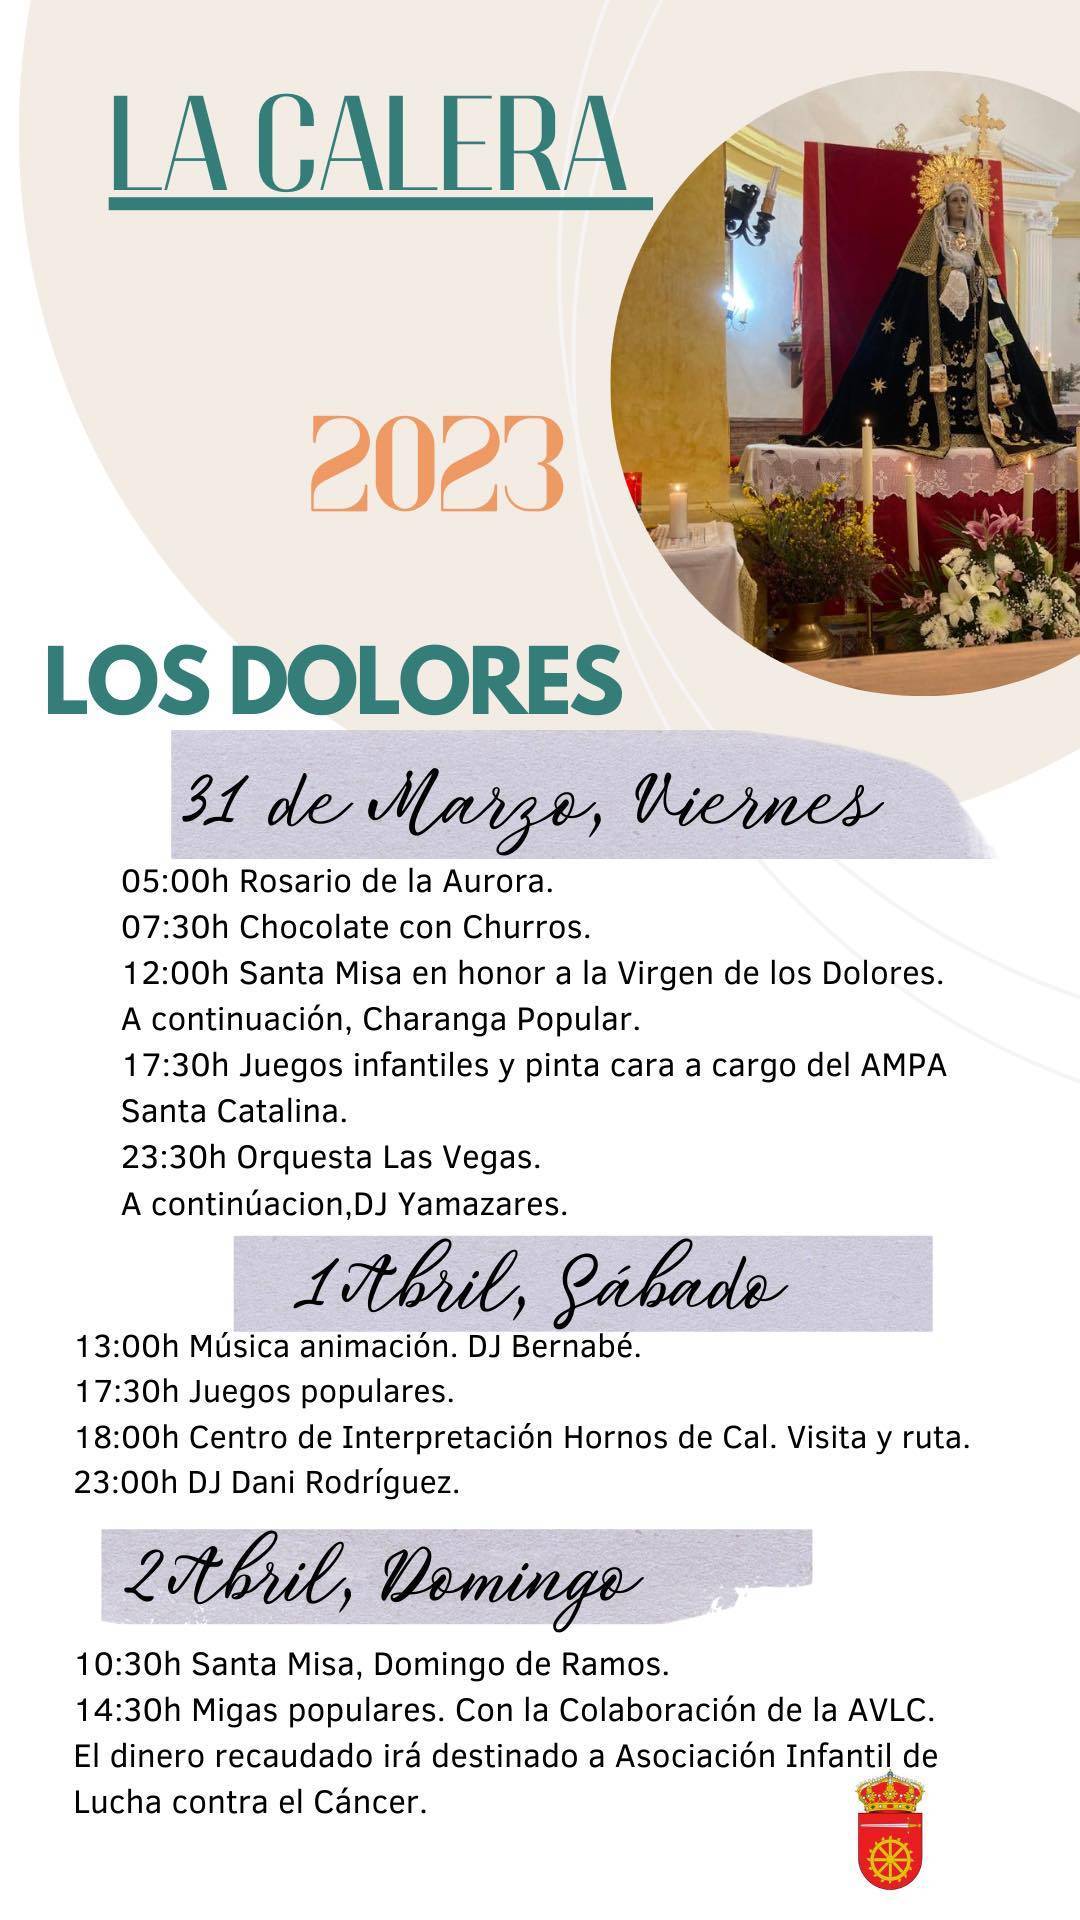 Fiestas en honor a la Virgen de los Dolores (2023) - La Calera (Cáceres)